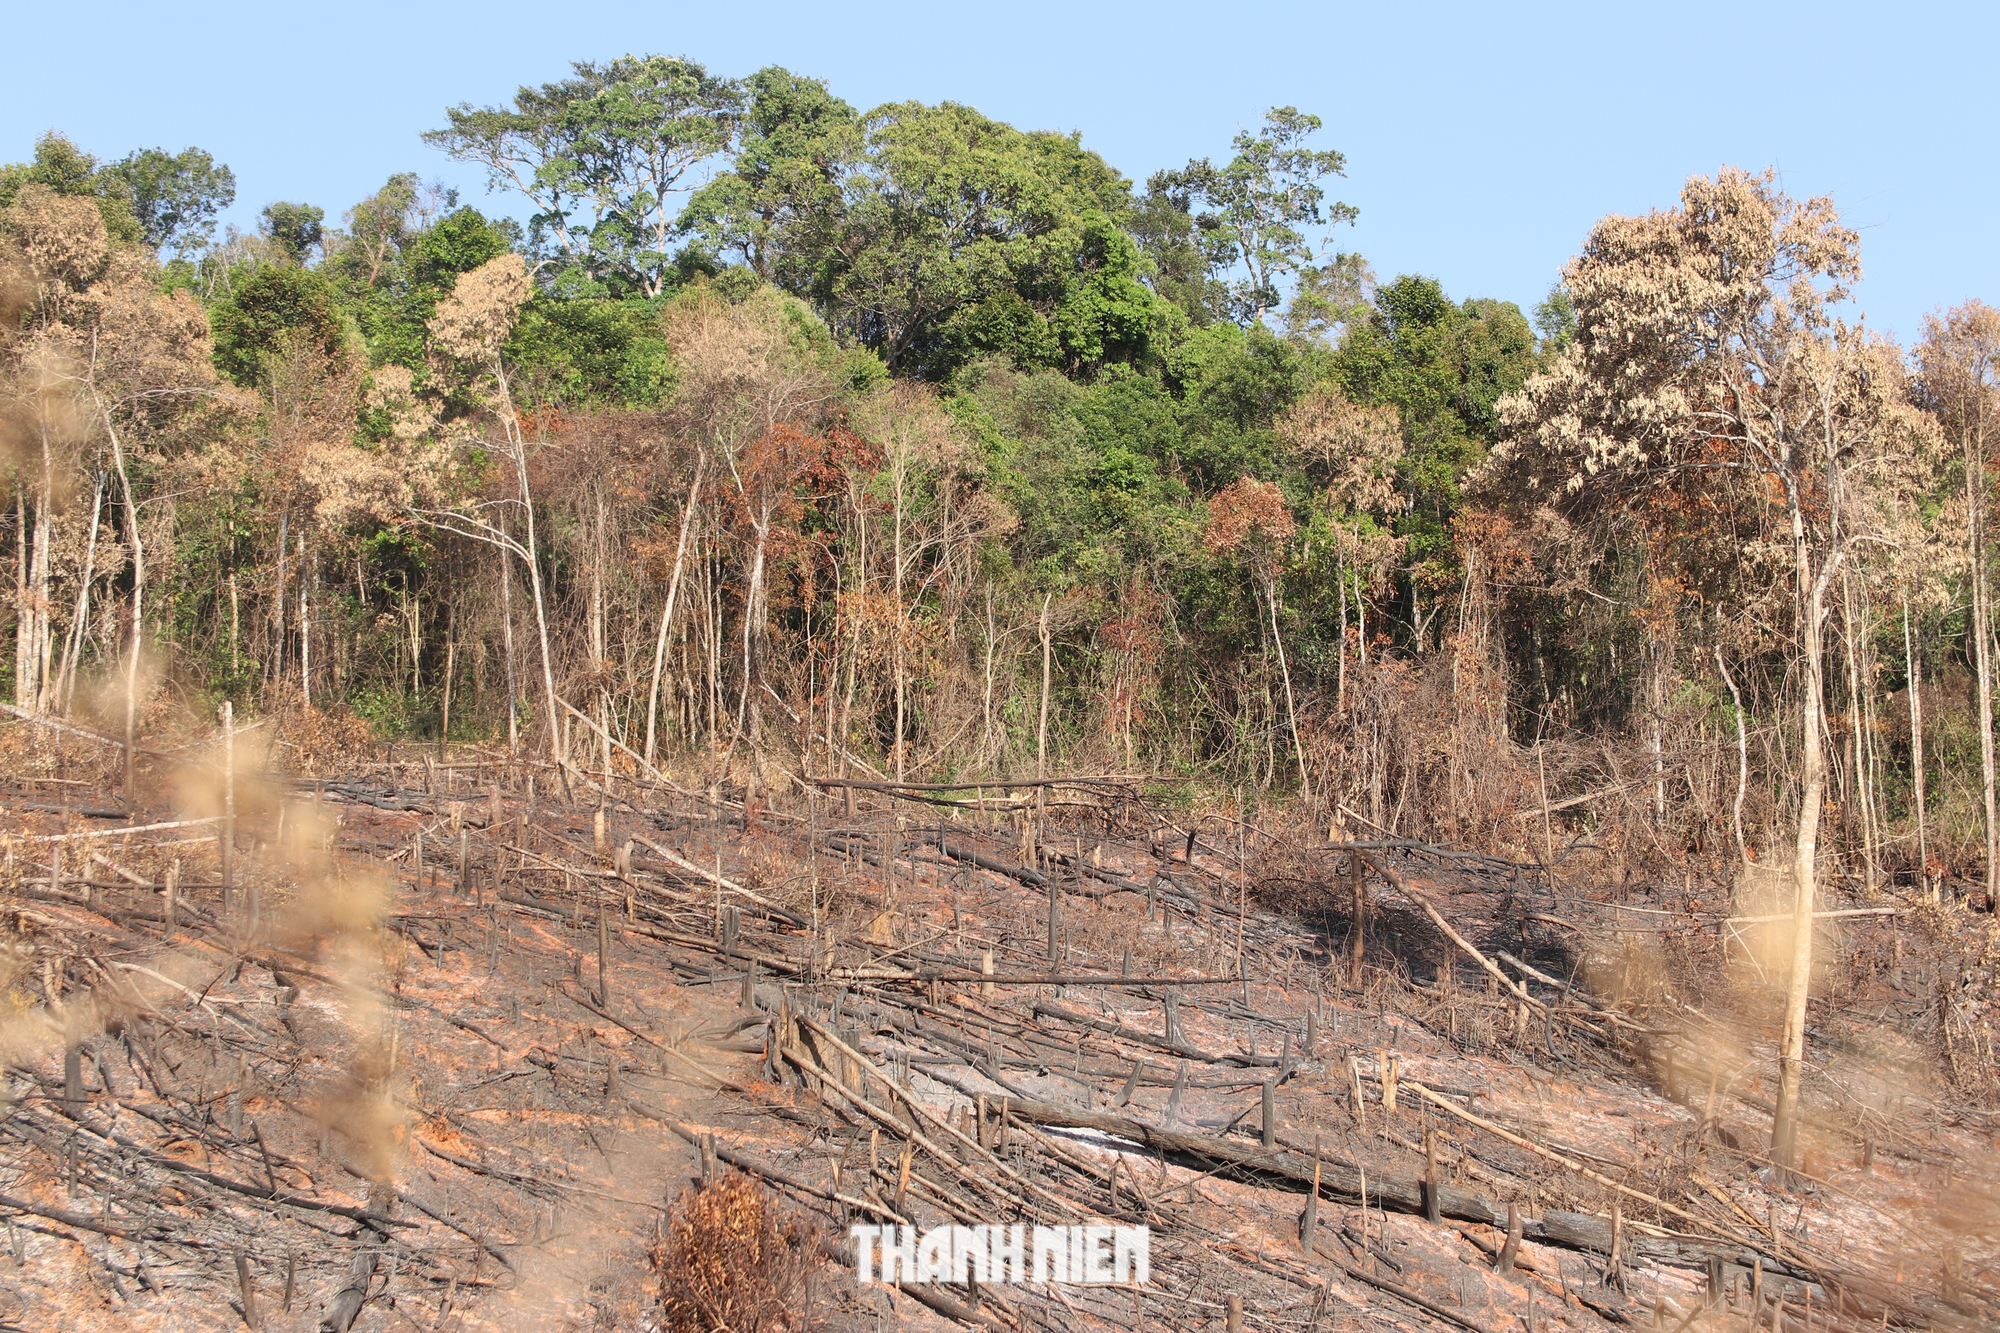 Đắk Nông: Phá 2.420 m2 rừng sản suất, nhóm ‘lâm tặc’ bị xử phạt 193,75 triệu đồng - Ảnh 1.